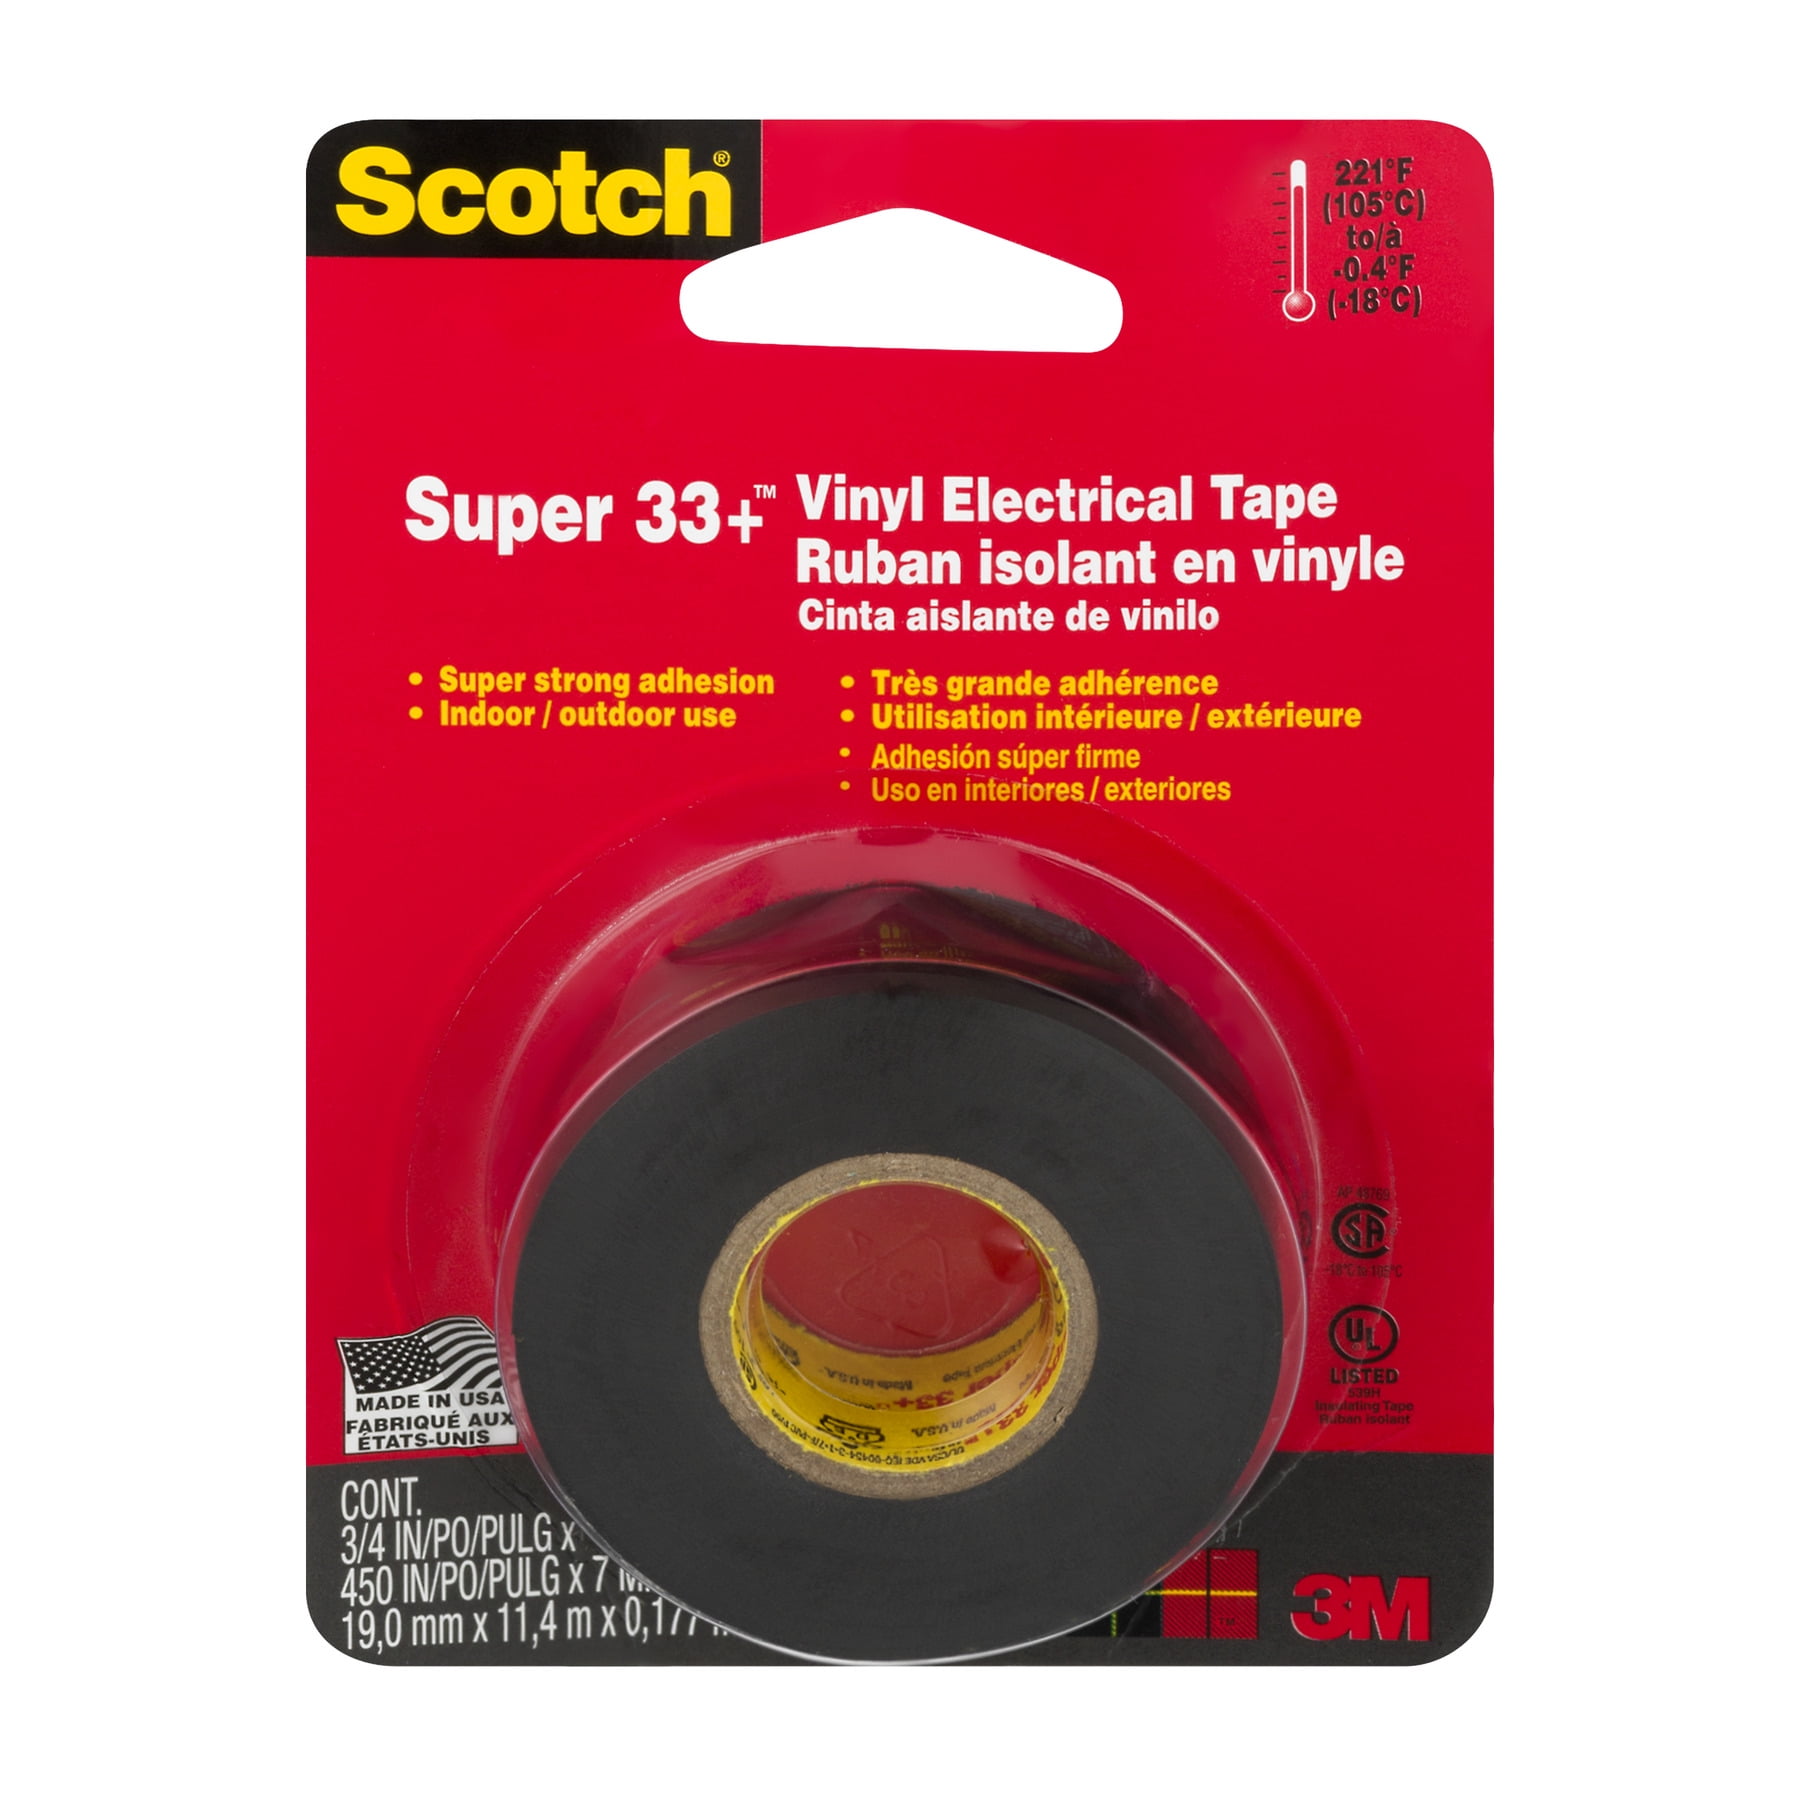 3M Scotch Super 33+ Vinyl Electrical Tape, Black